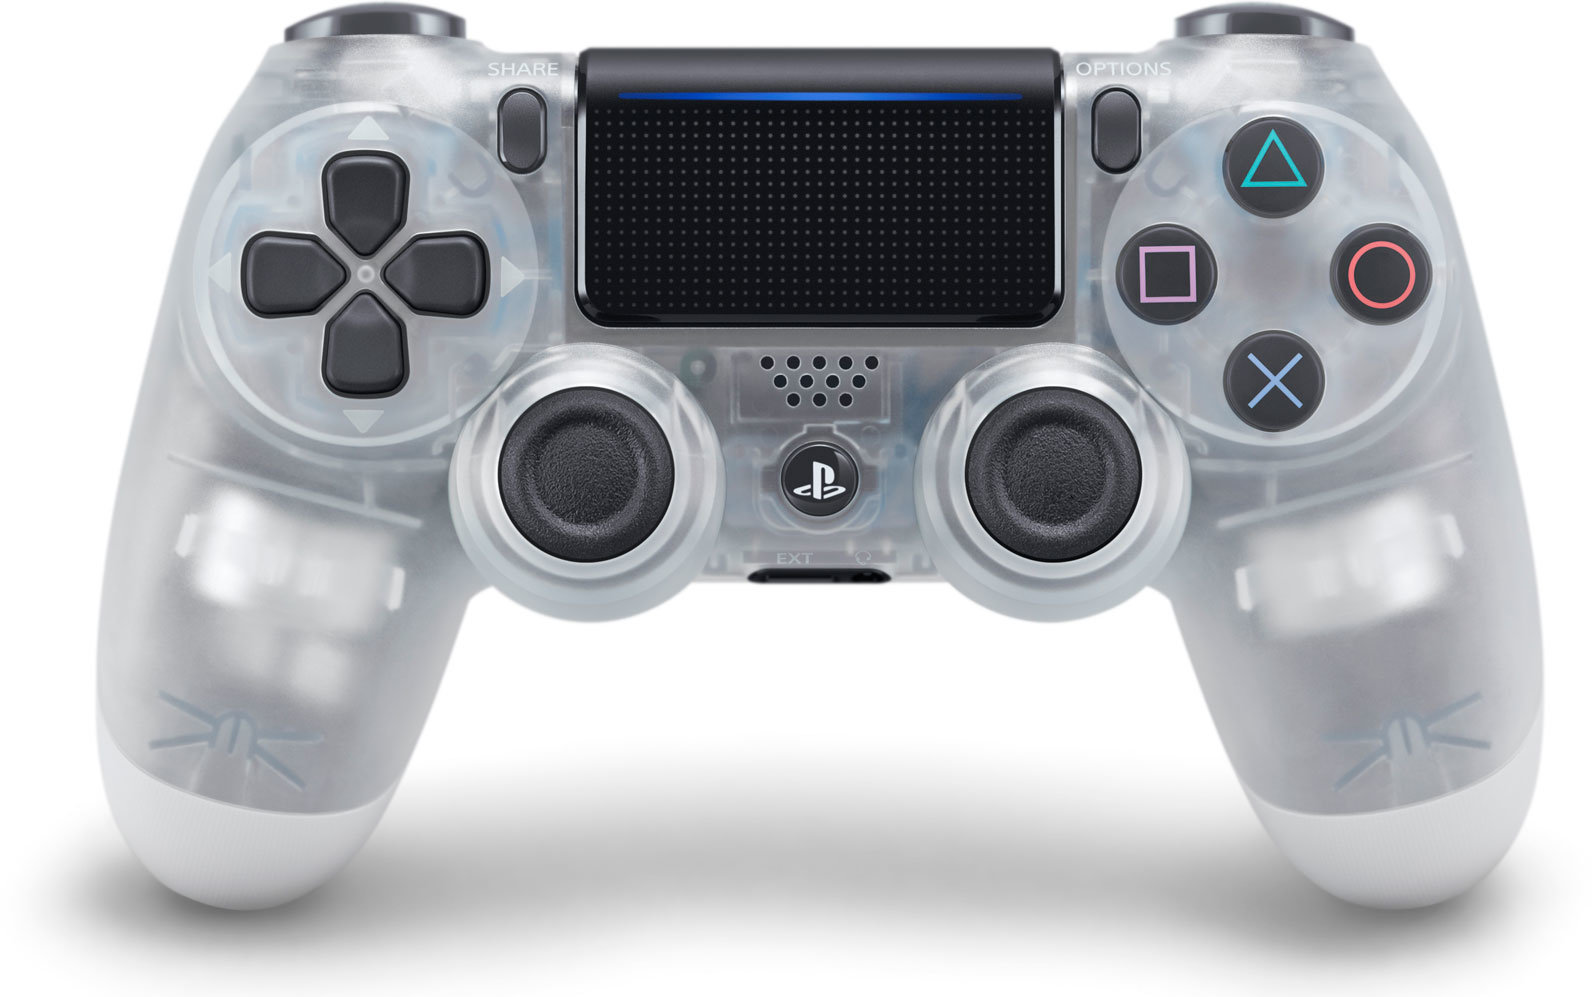 PS4 - DualShock 4 Controller Crystal v2 PS719868361